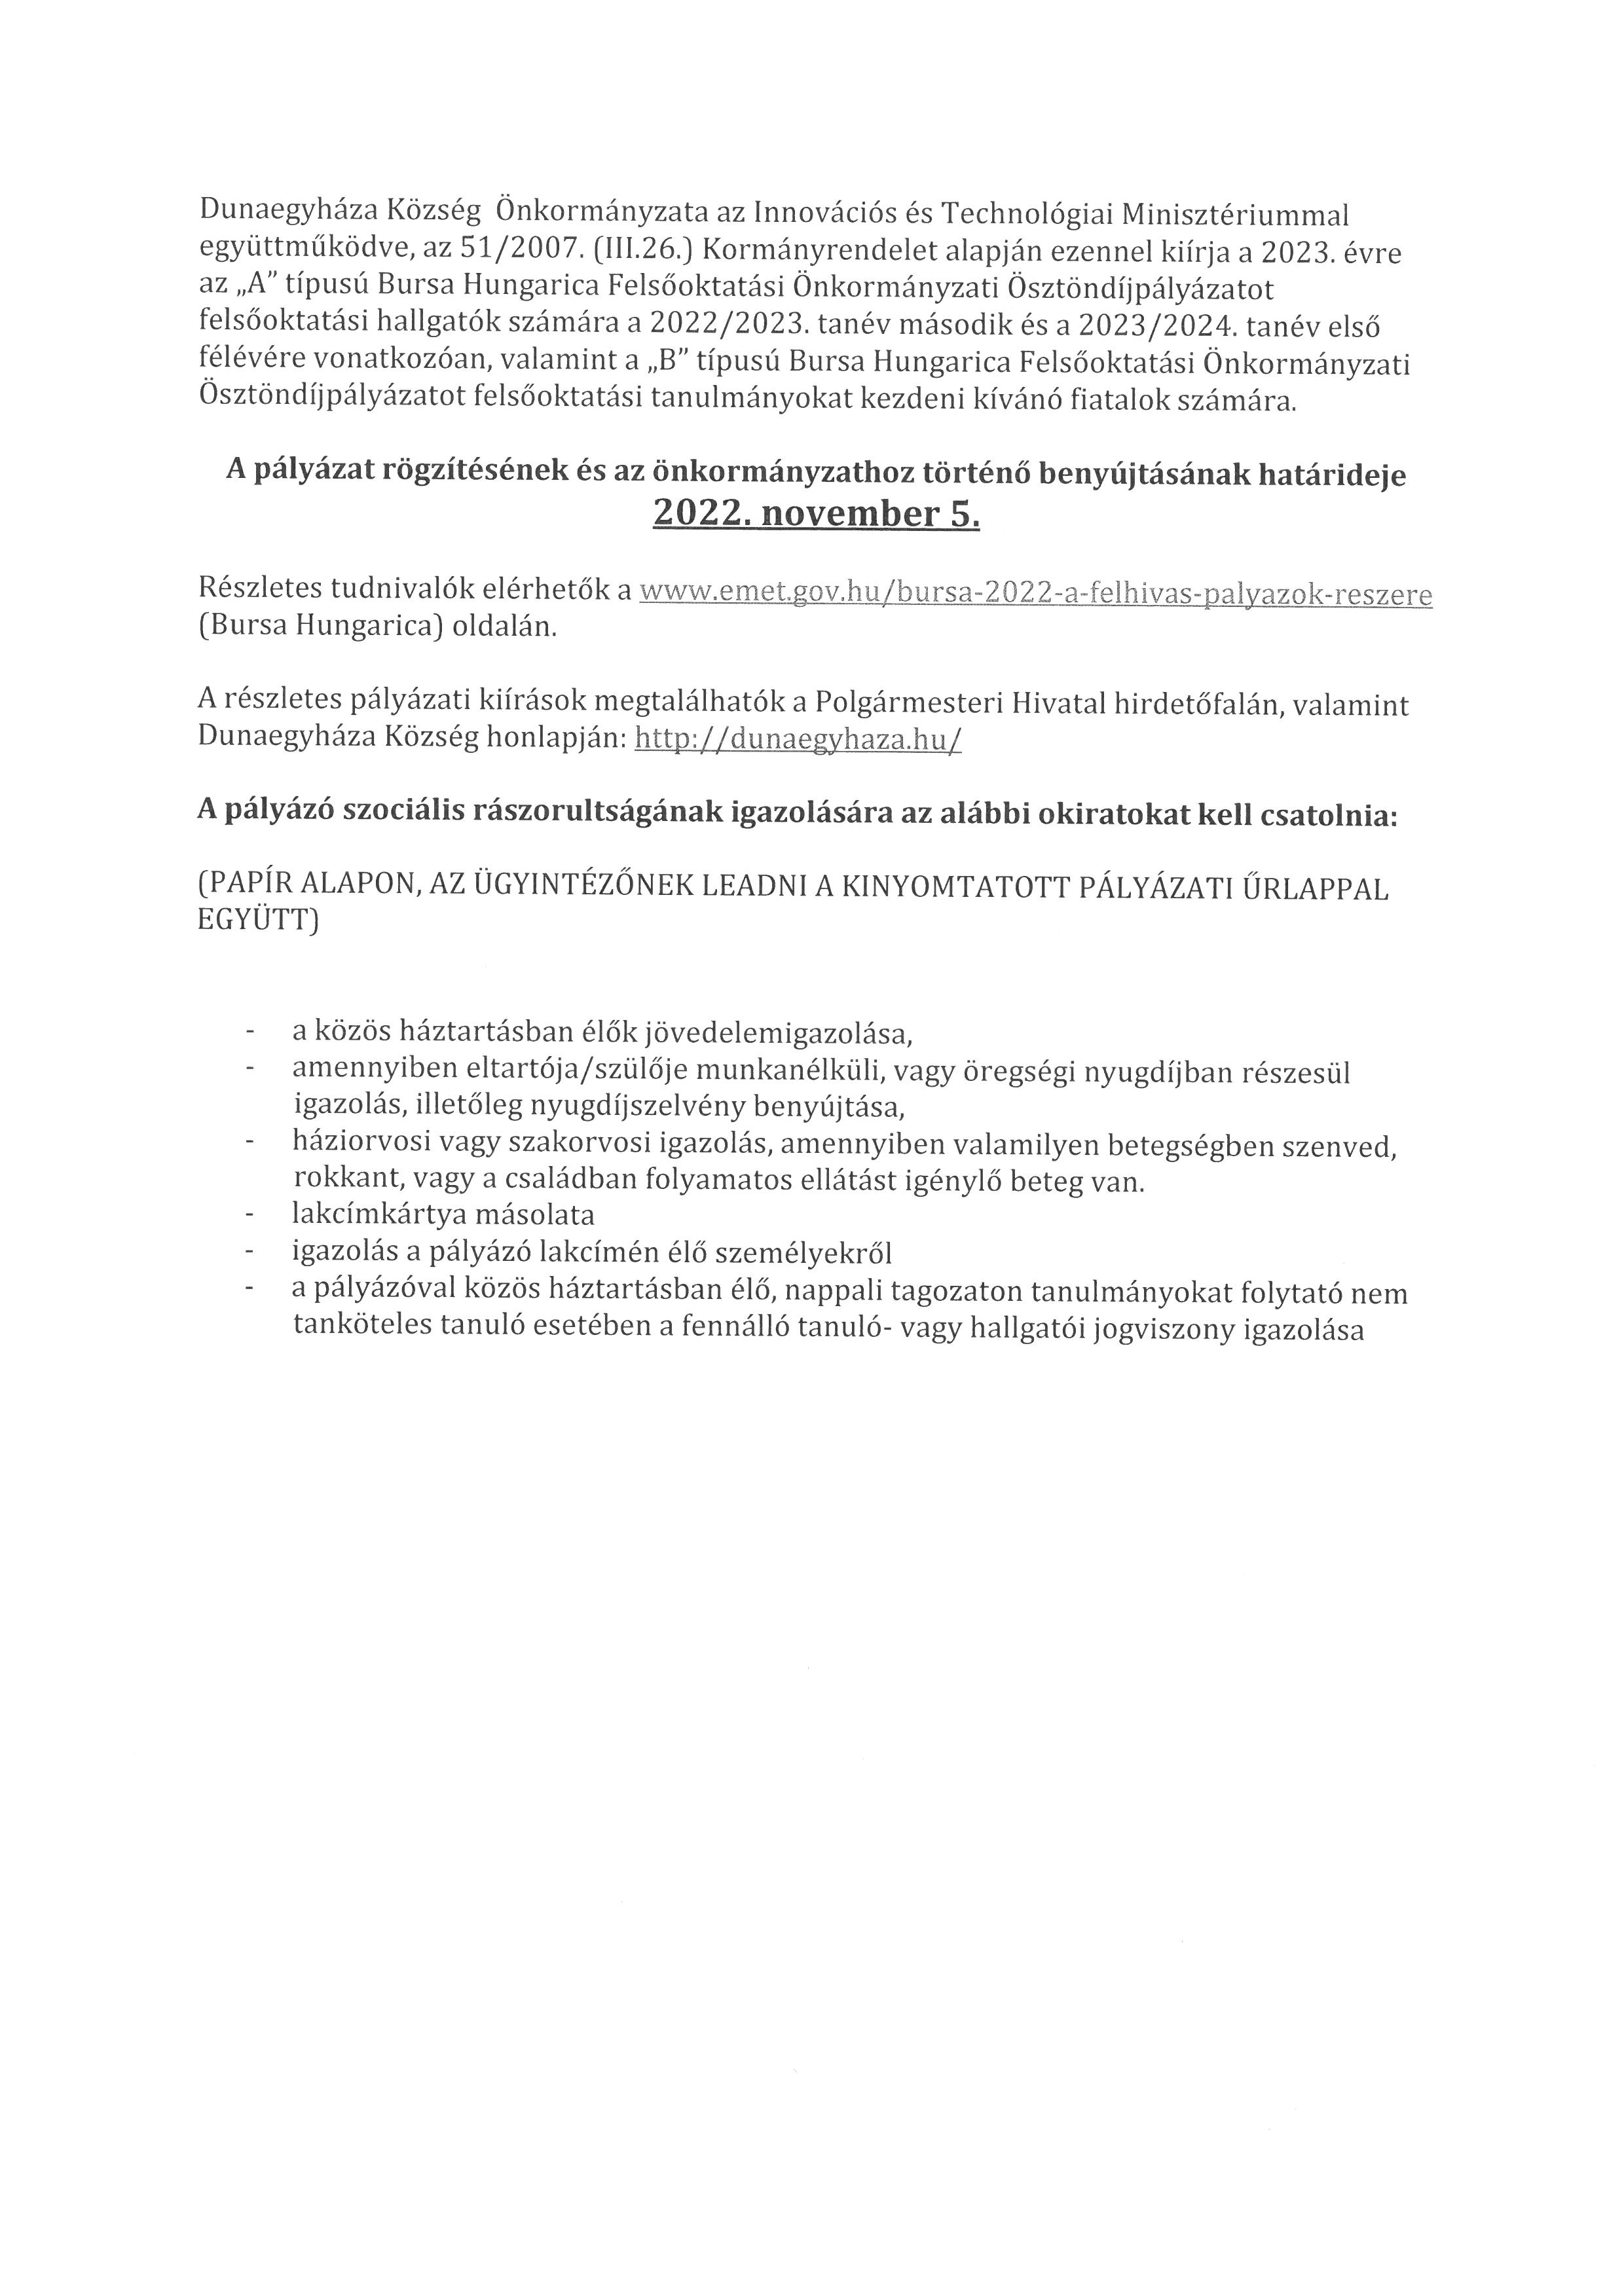 Bursa Hungarica Felsőoktatási Önkormányzati Ösztöndíjpályázat felhívás